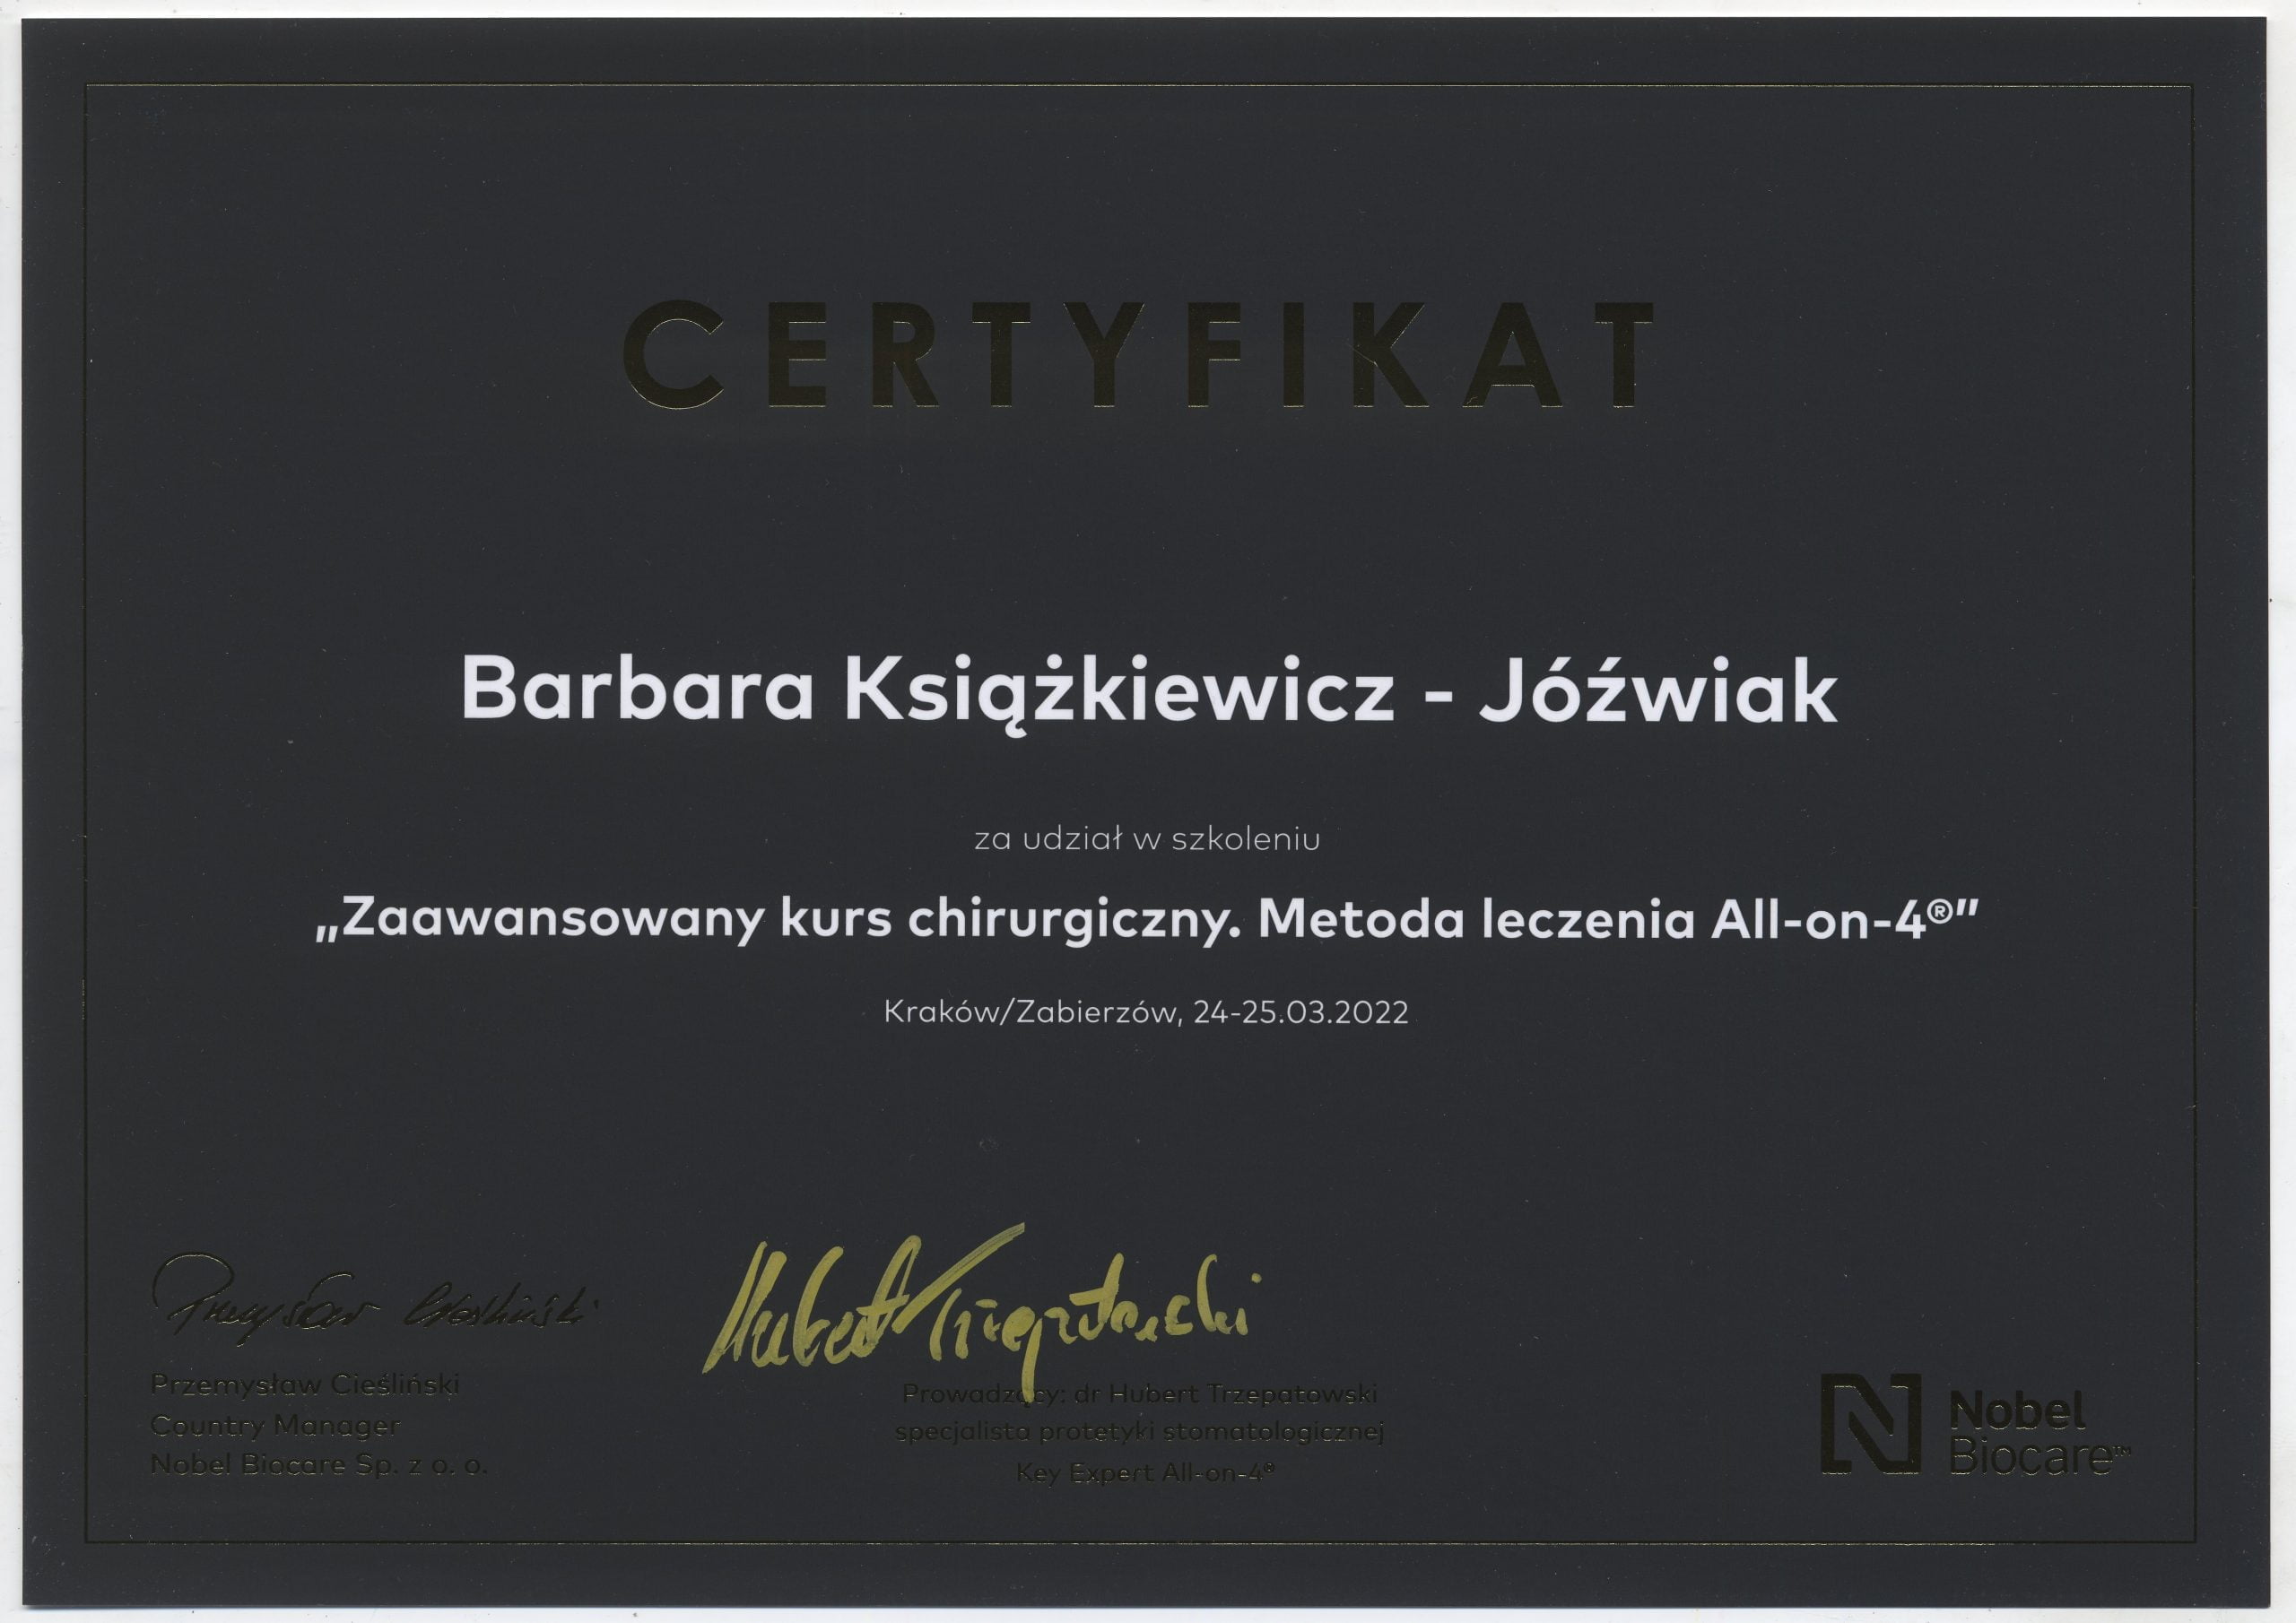 Barbara Książkiewicz-Jóźwiak certyfikat 4